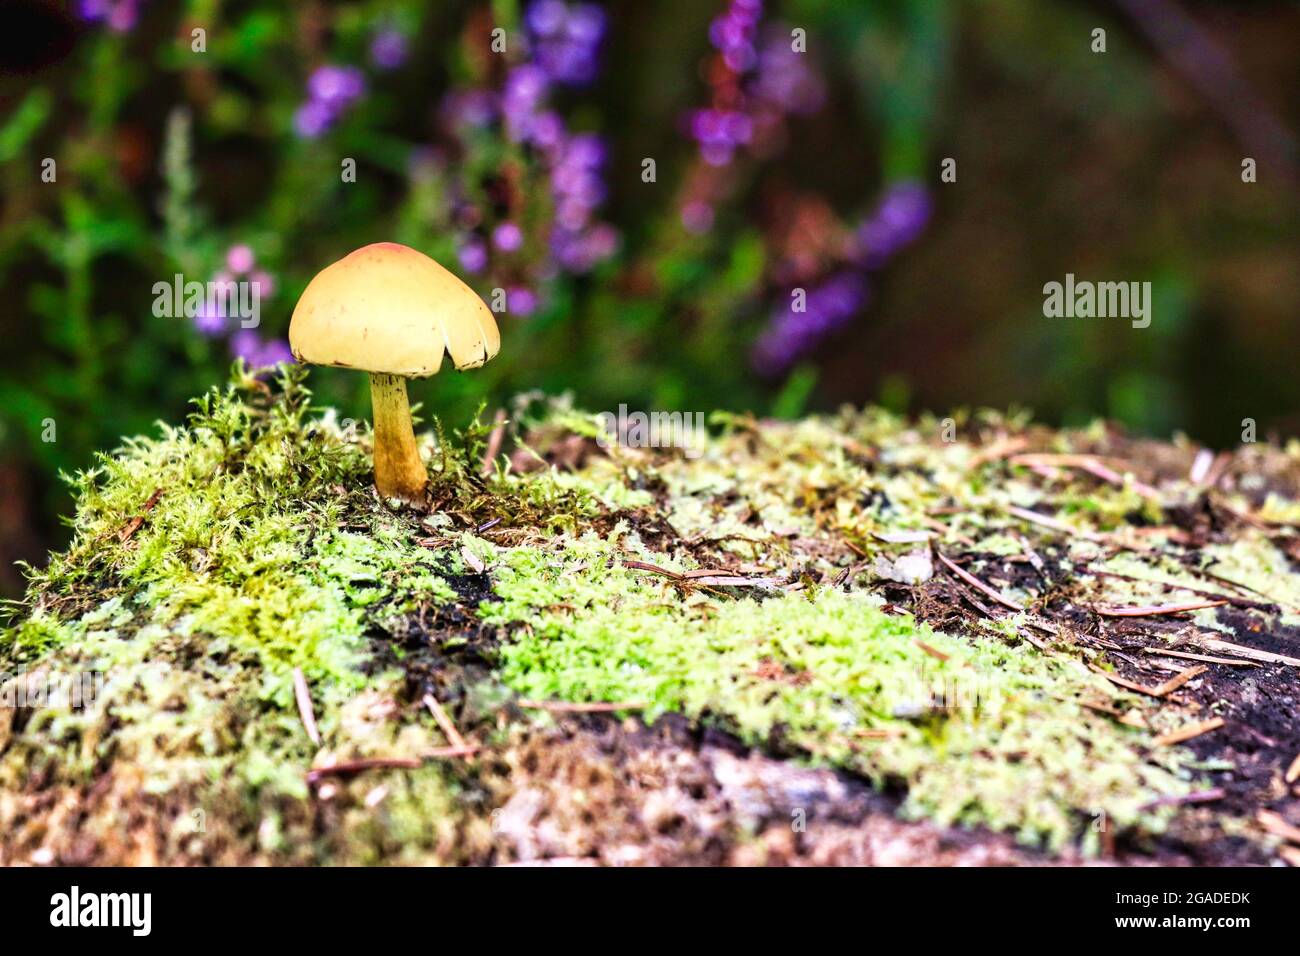 Sheathed woodtuft fungus, Kuehneromyces mutabilis Stock Photo